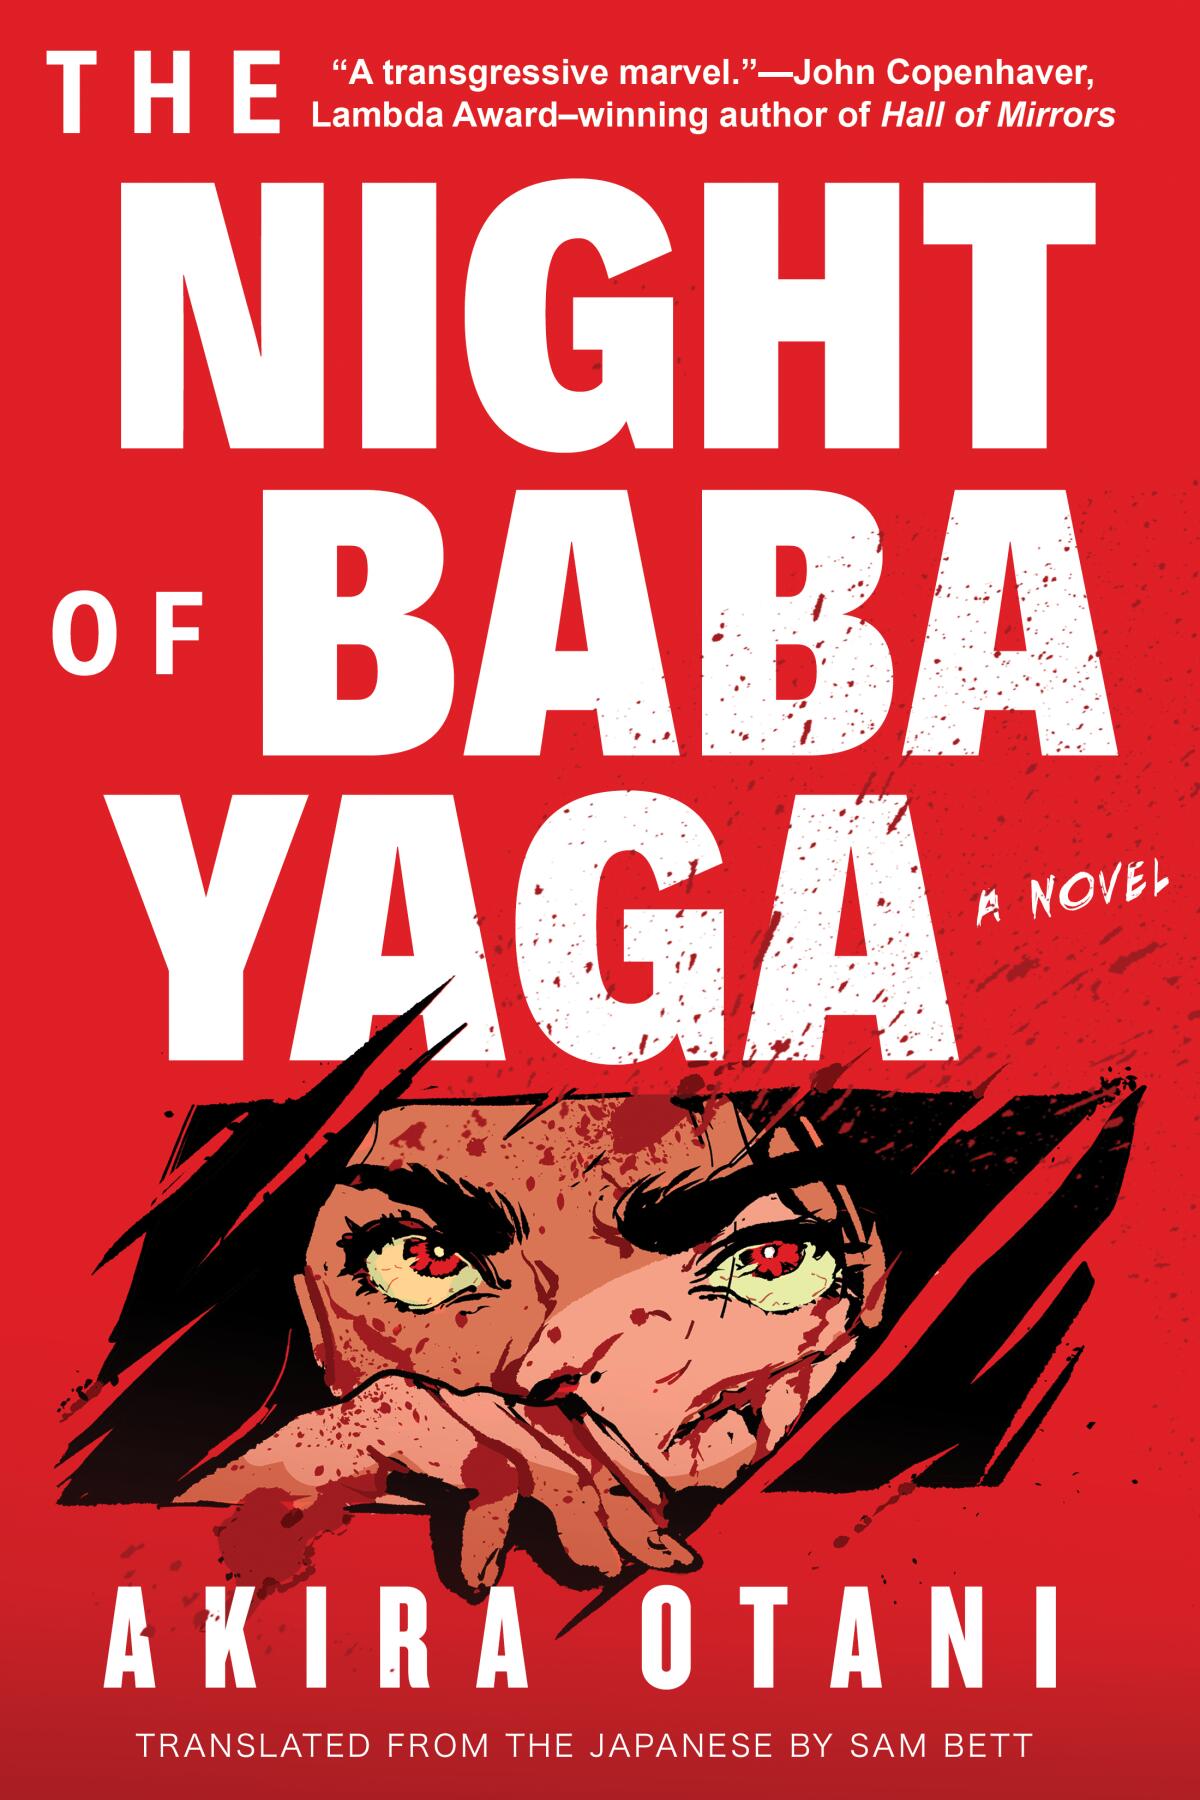 "The Night of Baba Yaga" by Akira Otani